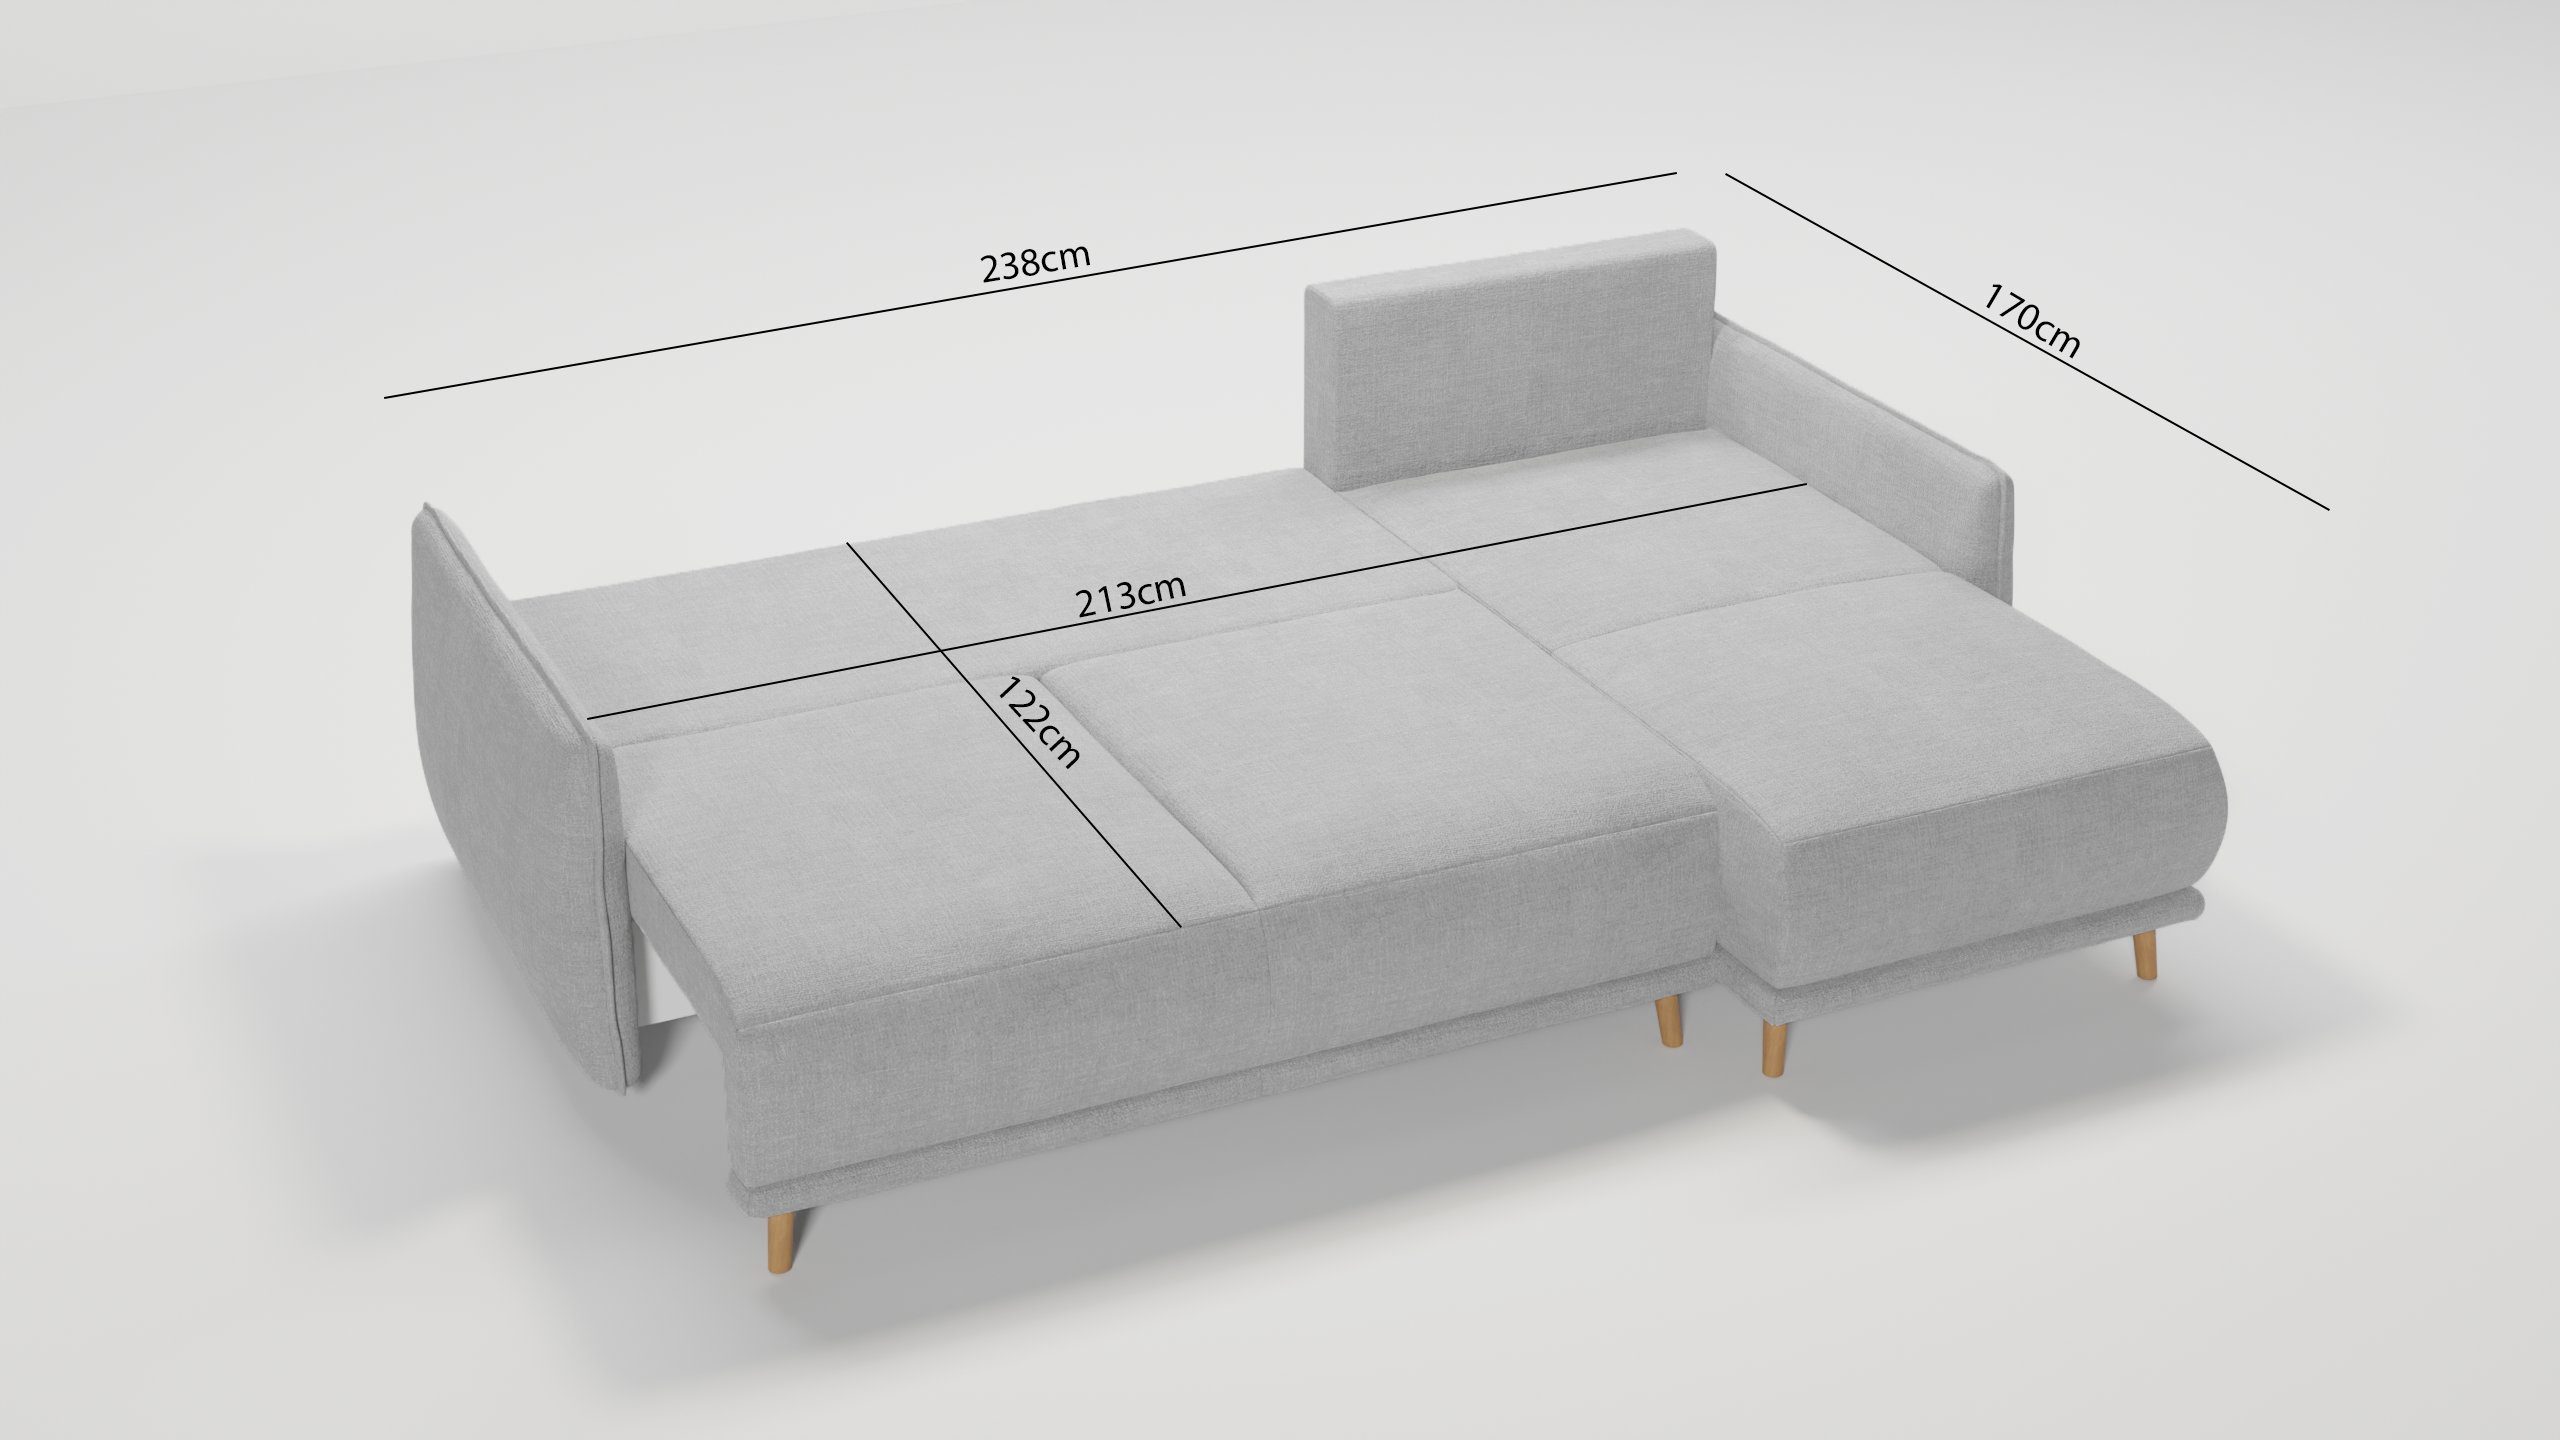 S-Style Möbel Lina links im Ecksofa rechts Design, und mit Silber Bettfunktion Wellenfederung mane bestellbar, Bettkasten skandinavischen oder mit